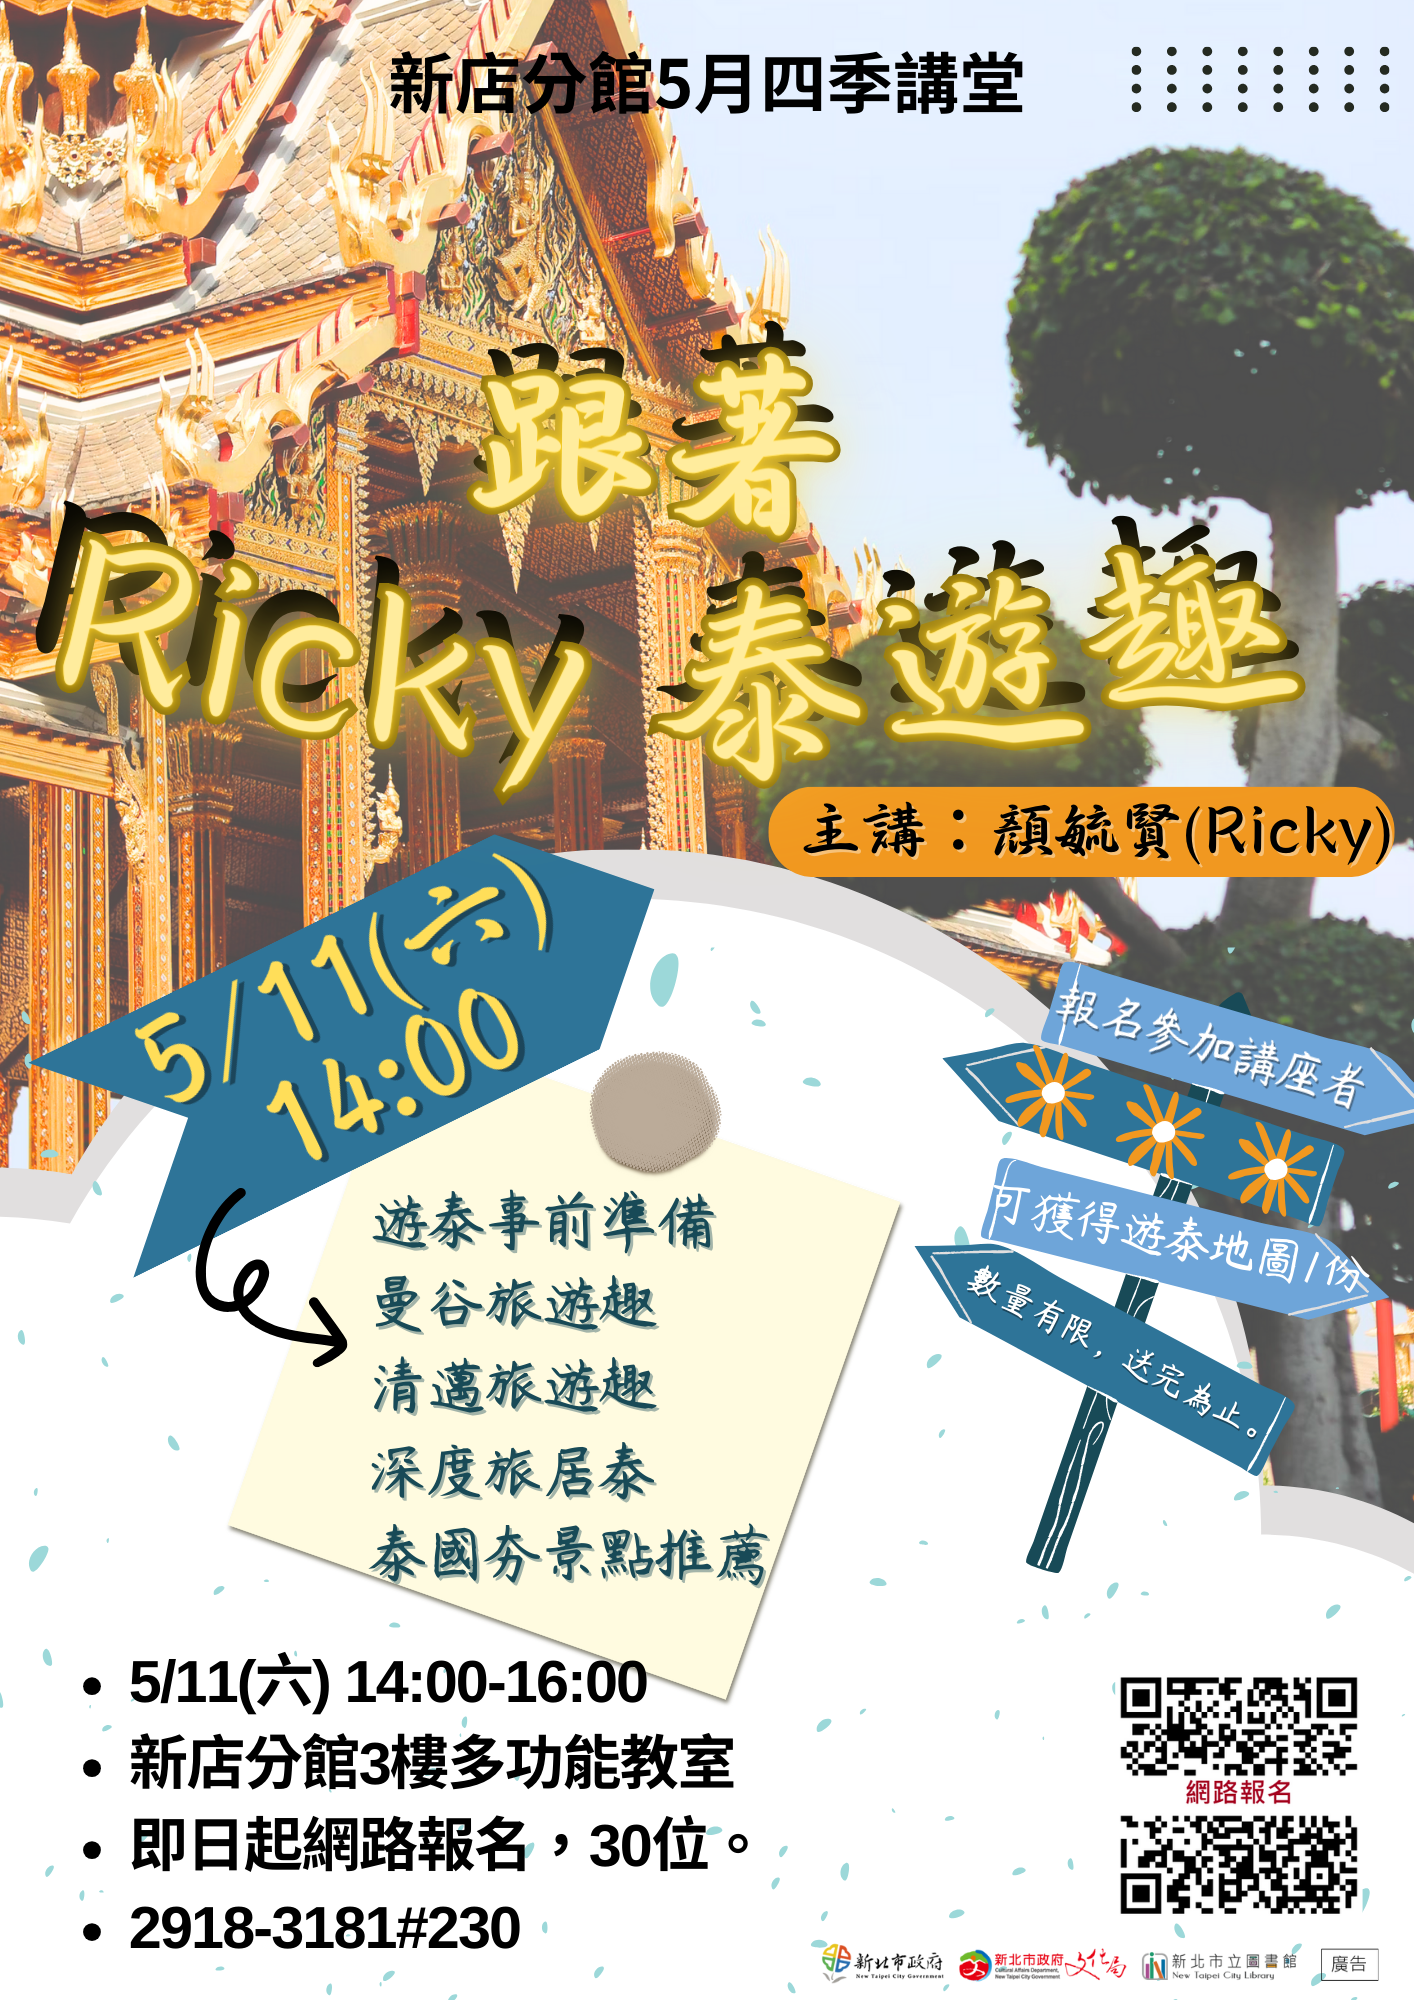 【新店分館】 113年5月11日(六) 14:00跟著Ricky泰遊趣